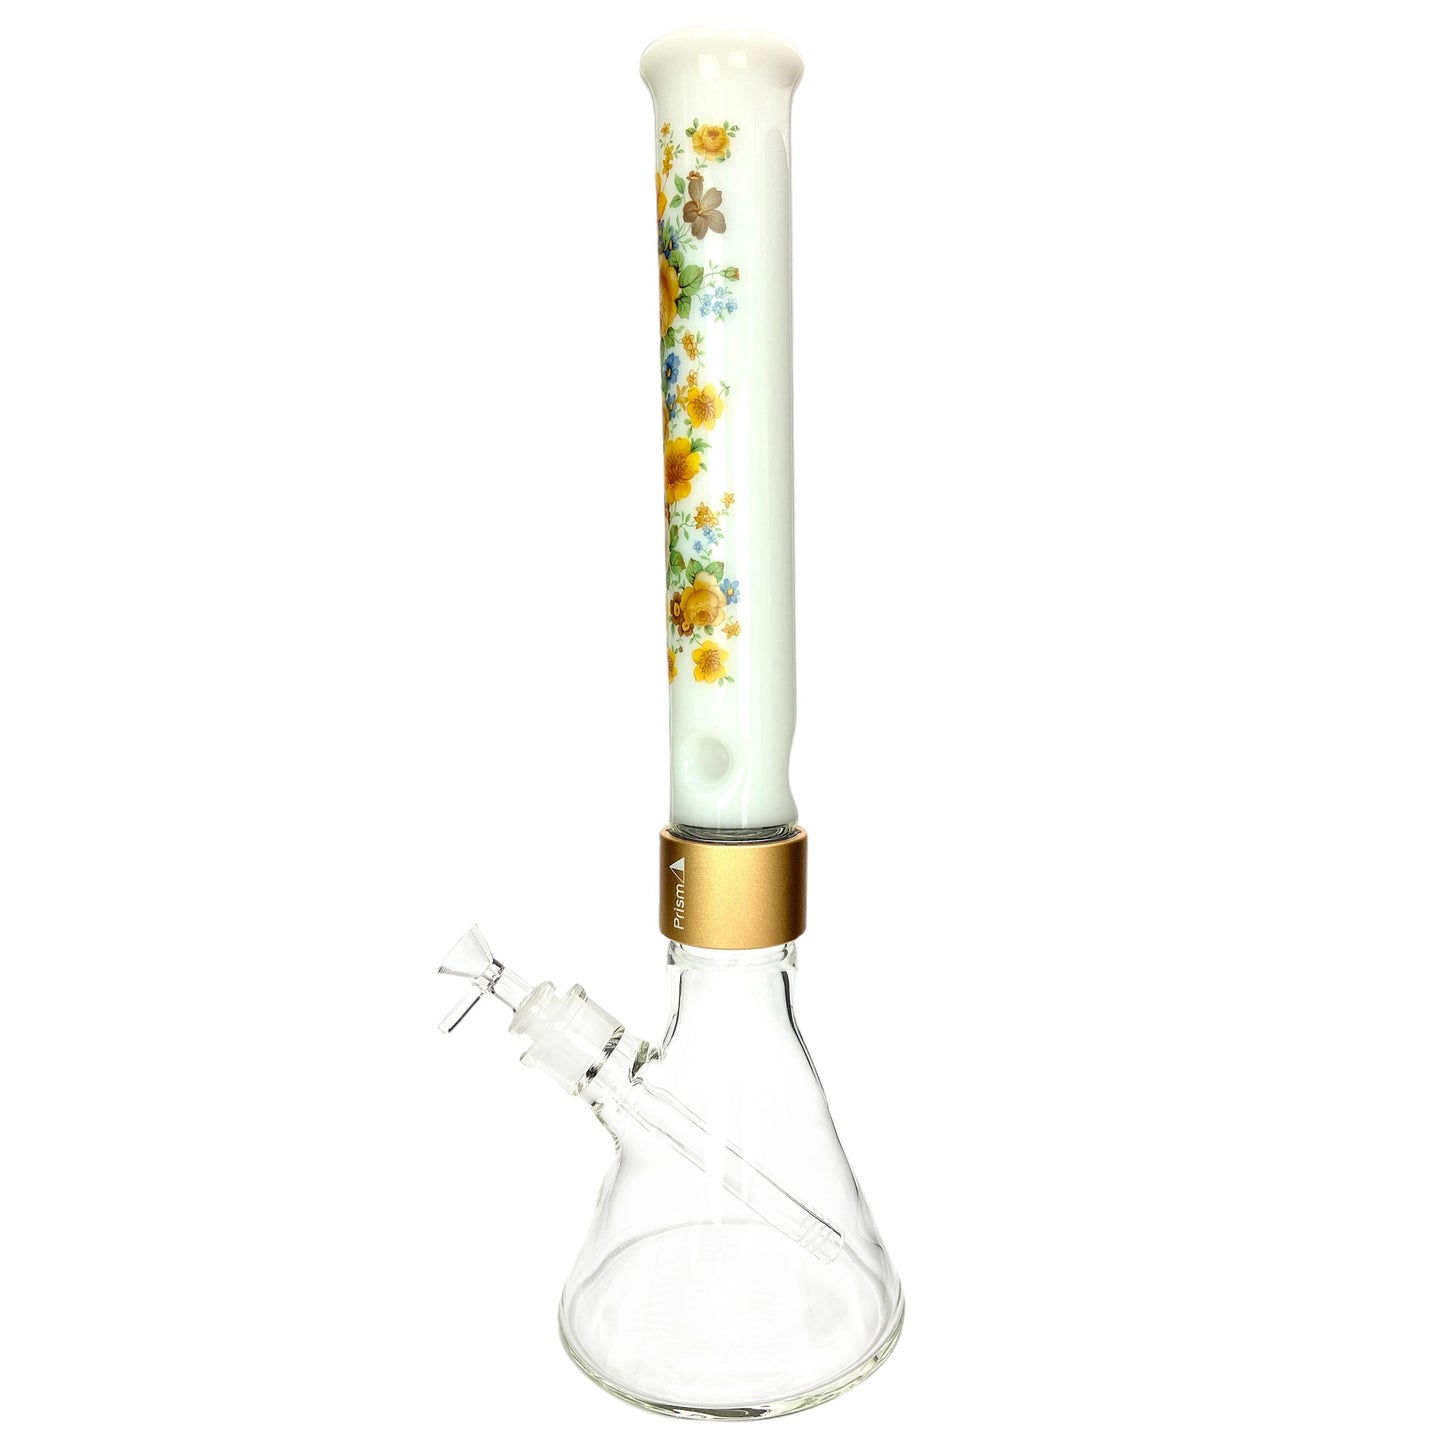 Prism Pipes 18" Vintage Floral Beaker Bong